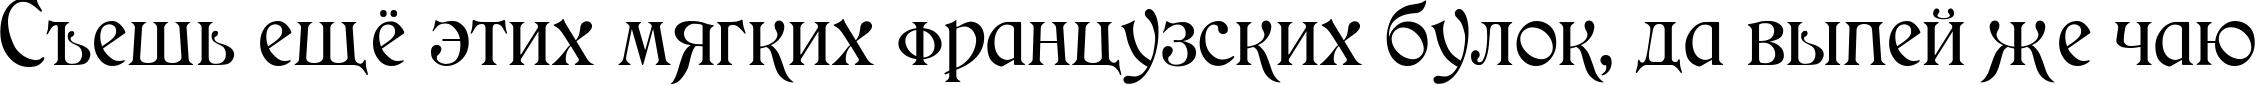 Пример написания шрифтом Medieval текста на русском